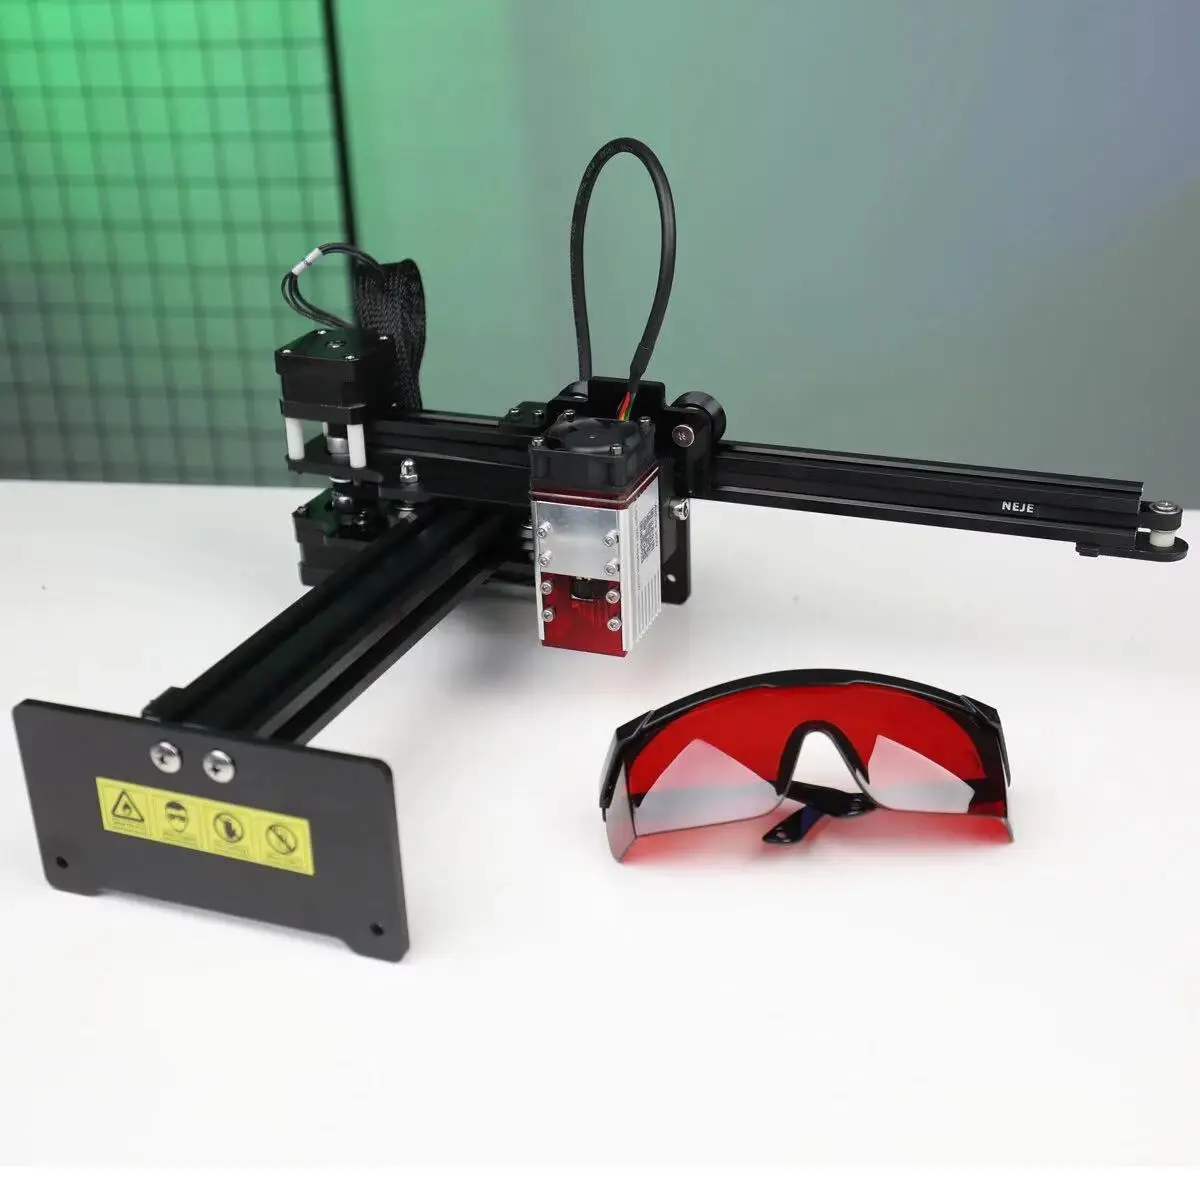 NEJE Master 2S A40630/A40640/A40630 desktop Laser Engraver and Cutter - Laser Engraving and Cutting Machine - Laser Printer enlarge